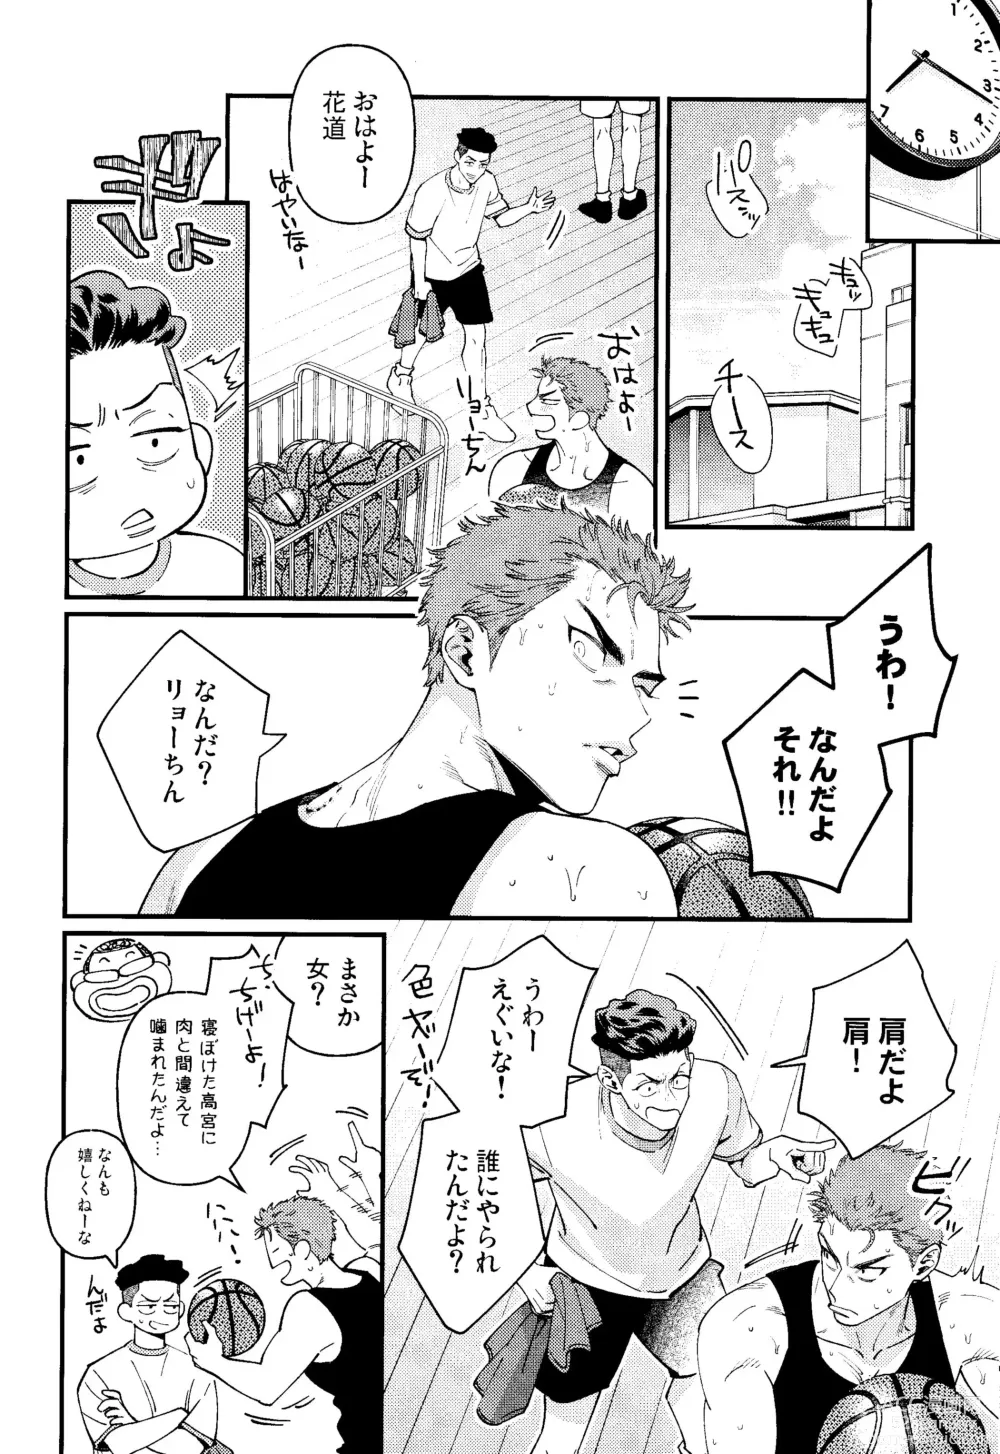 Page 6 of doujinshi Rukawa  Kaede wa Marking ga Shitai